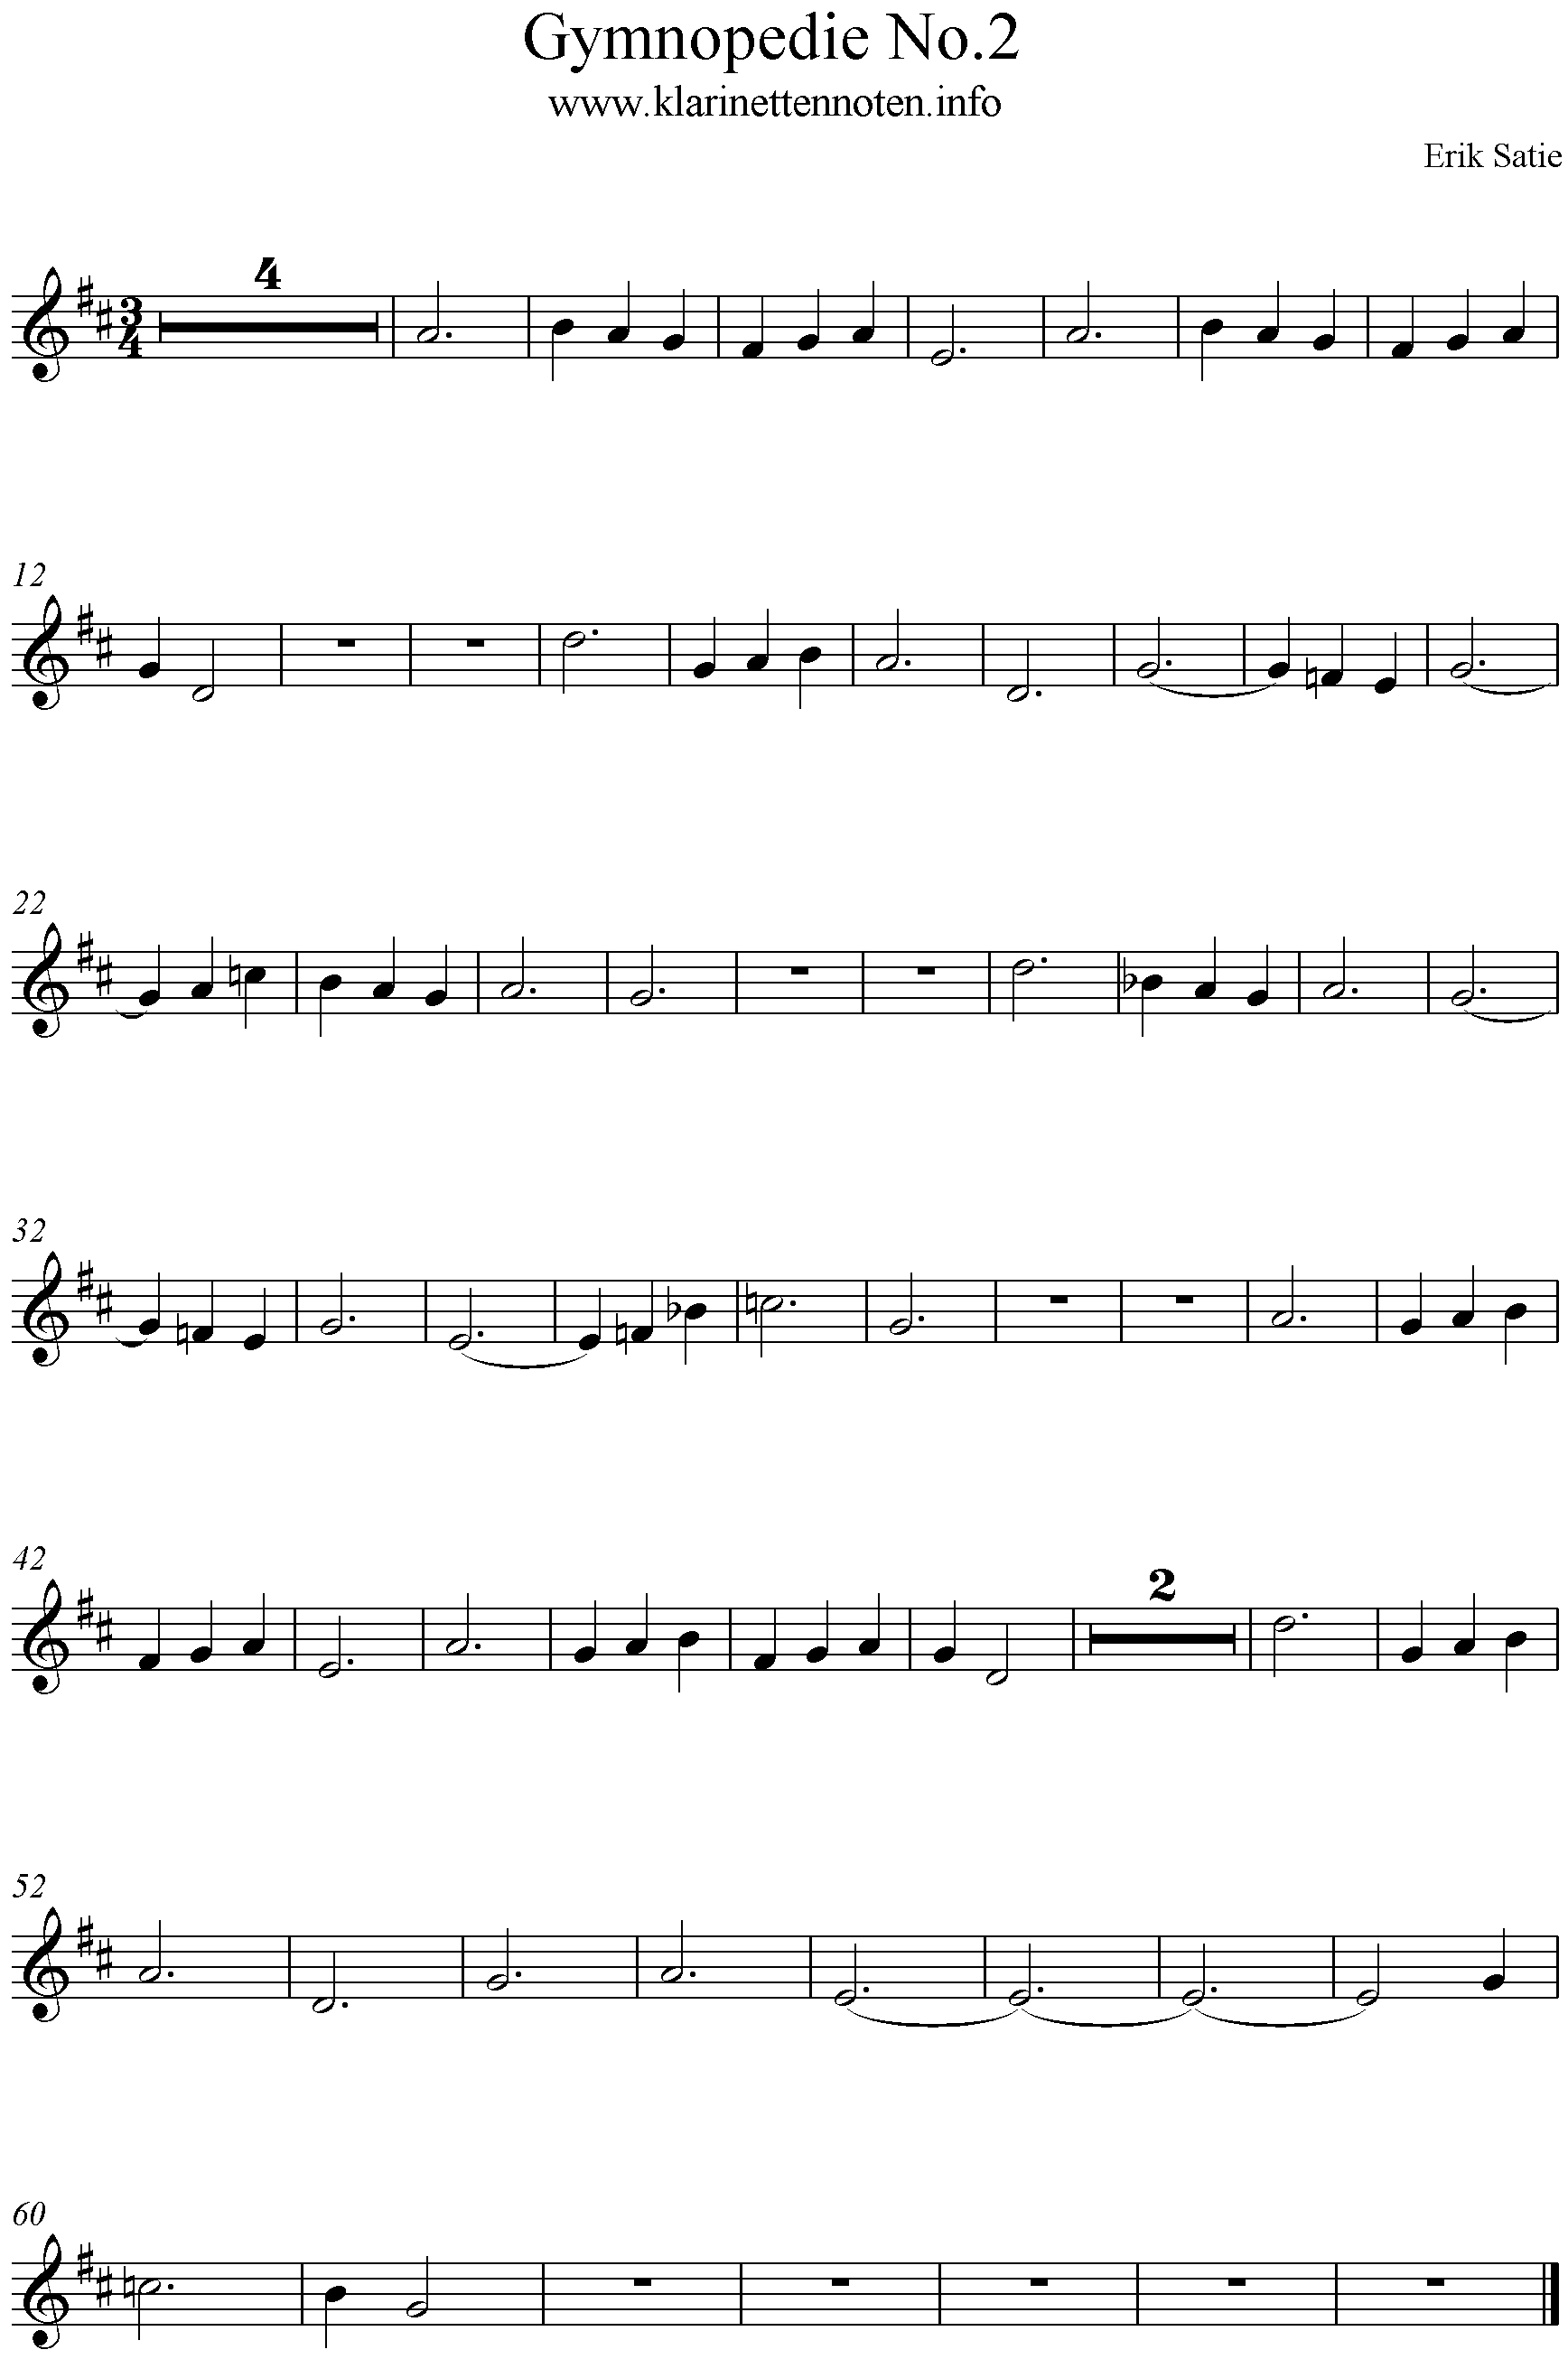 Noten Clarinet, Klarinette, Gymnopedie No 2 Erik Satie